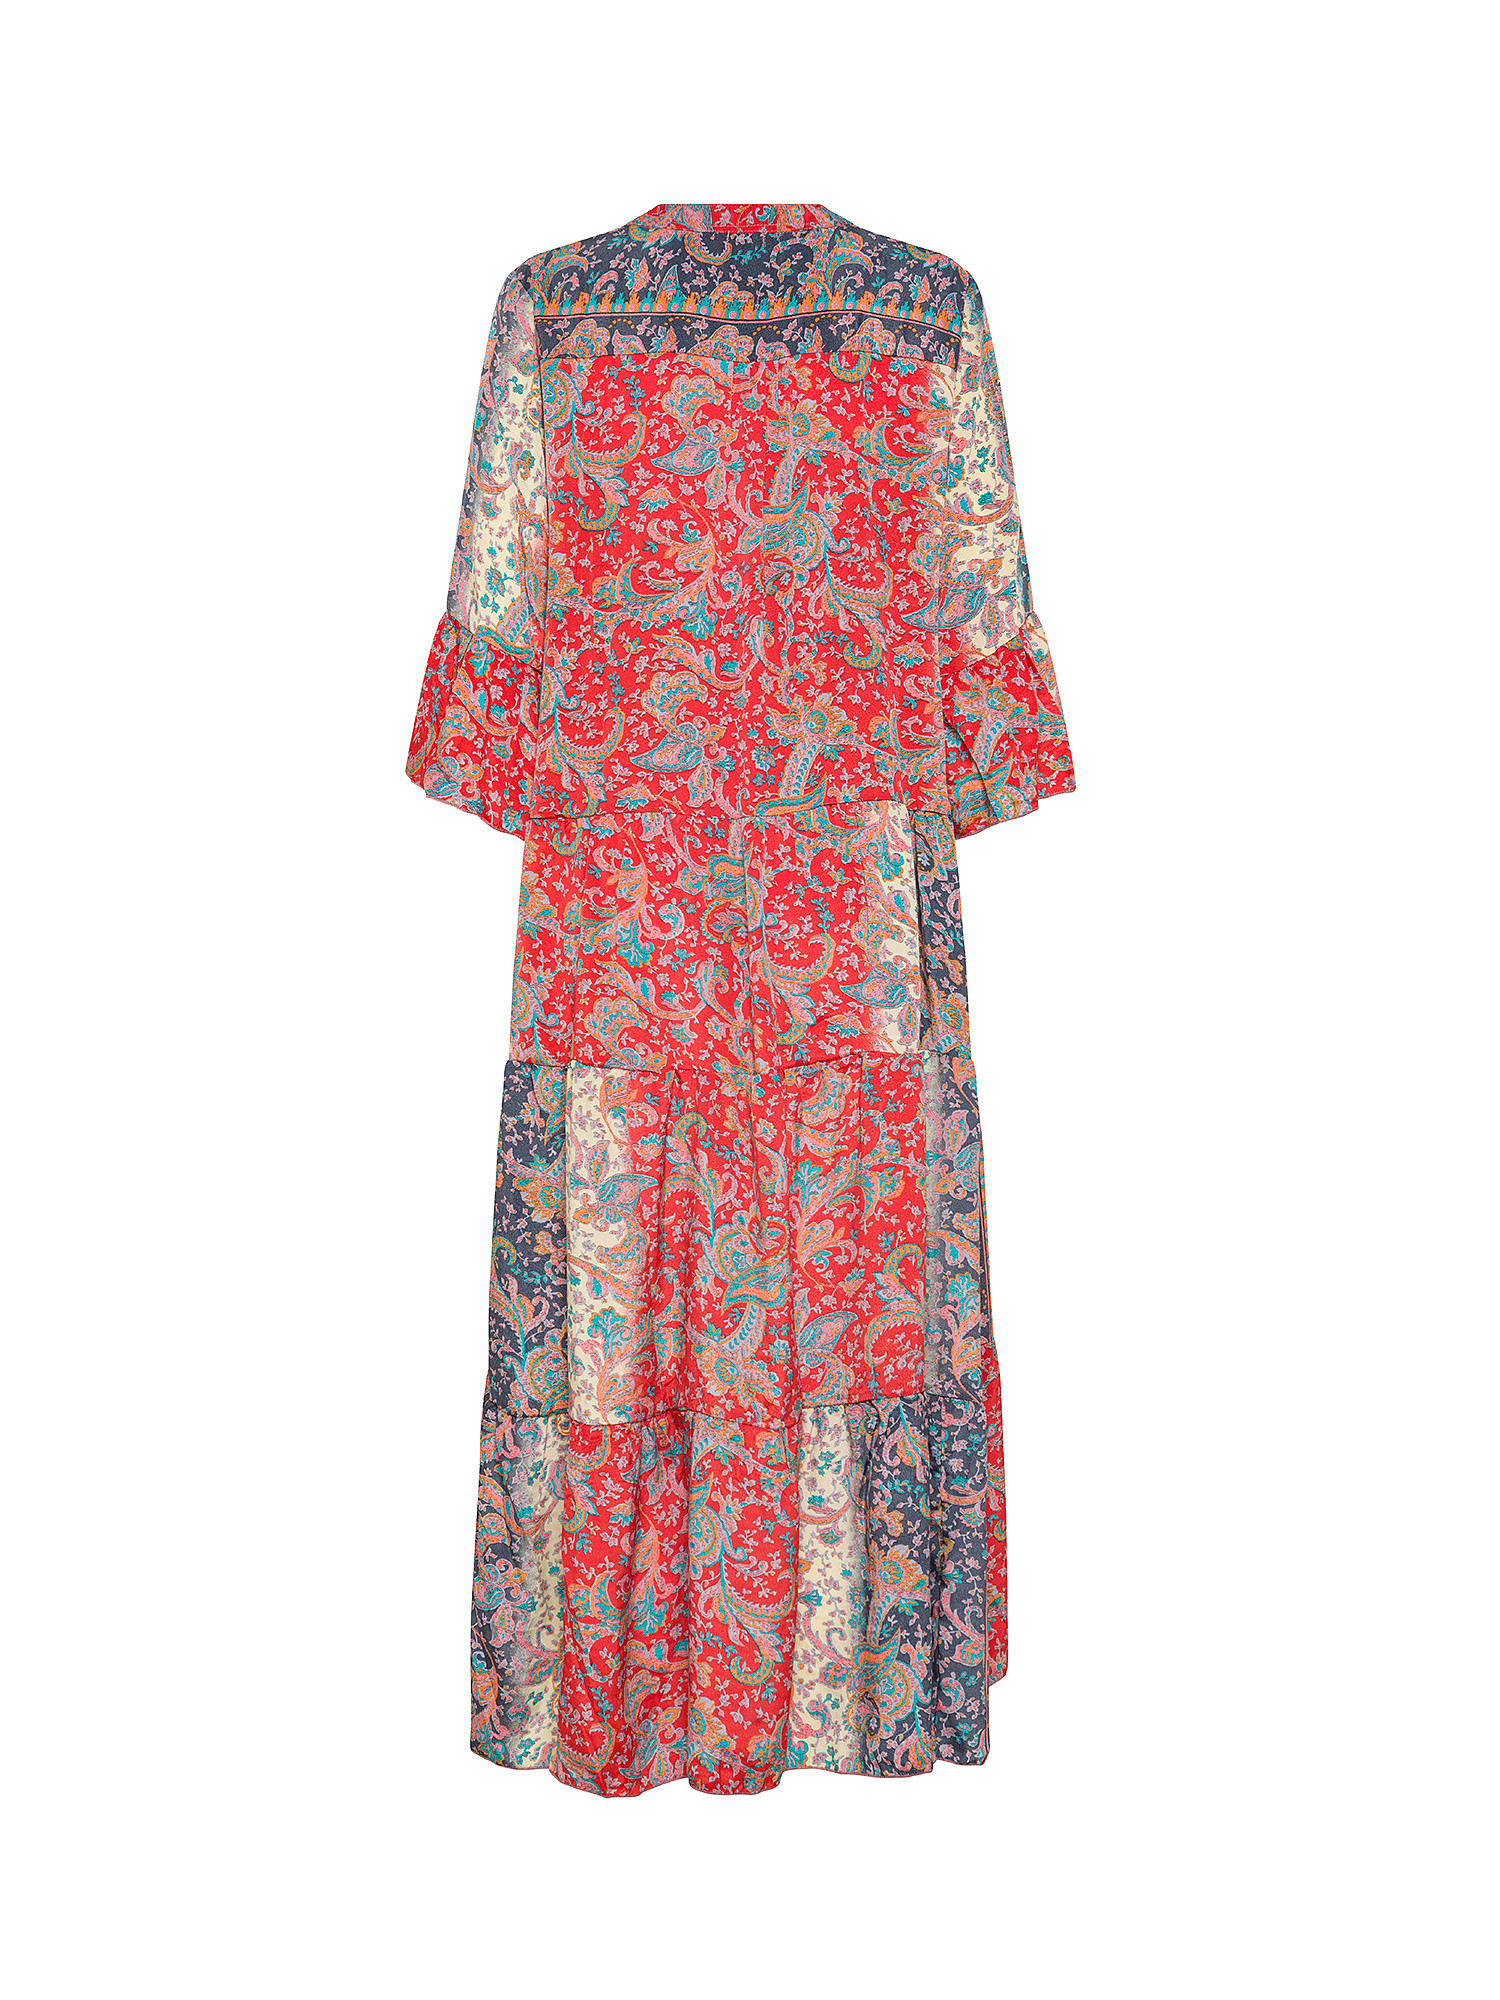 Koan - Long patterned dress, Multicolor, large image number 1